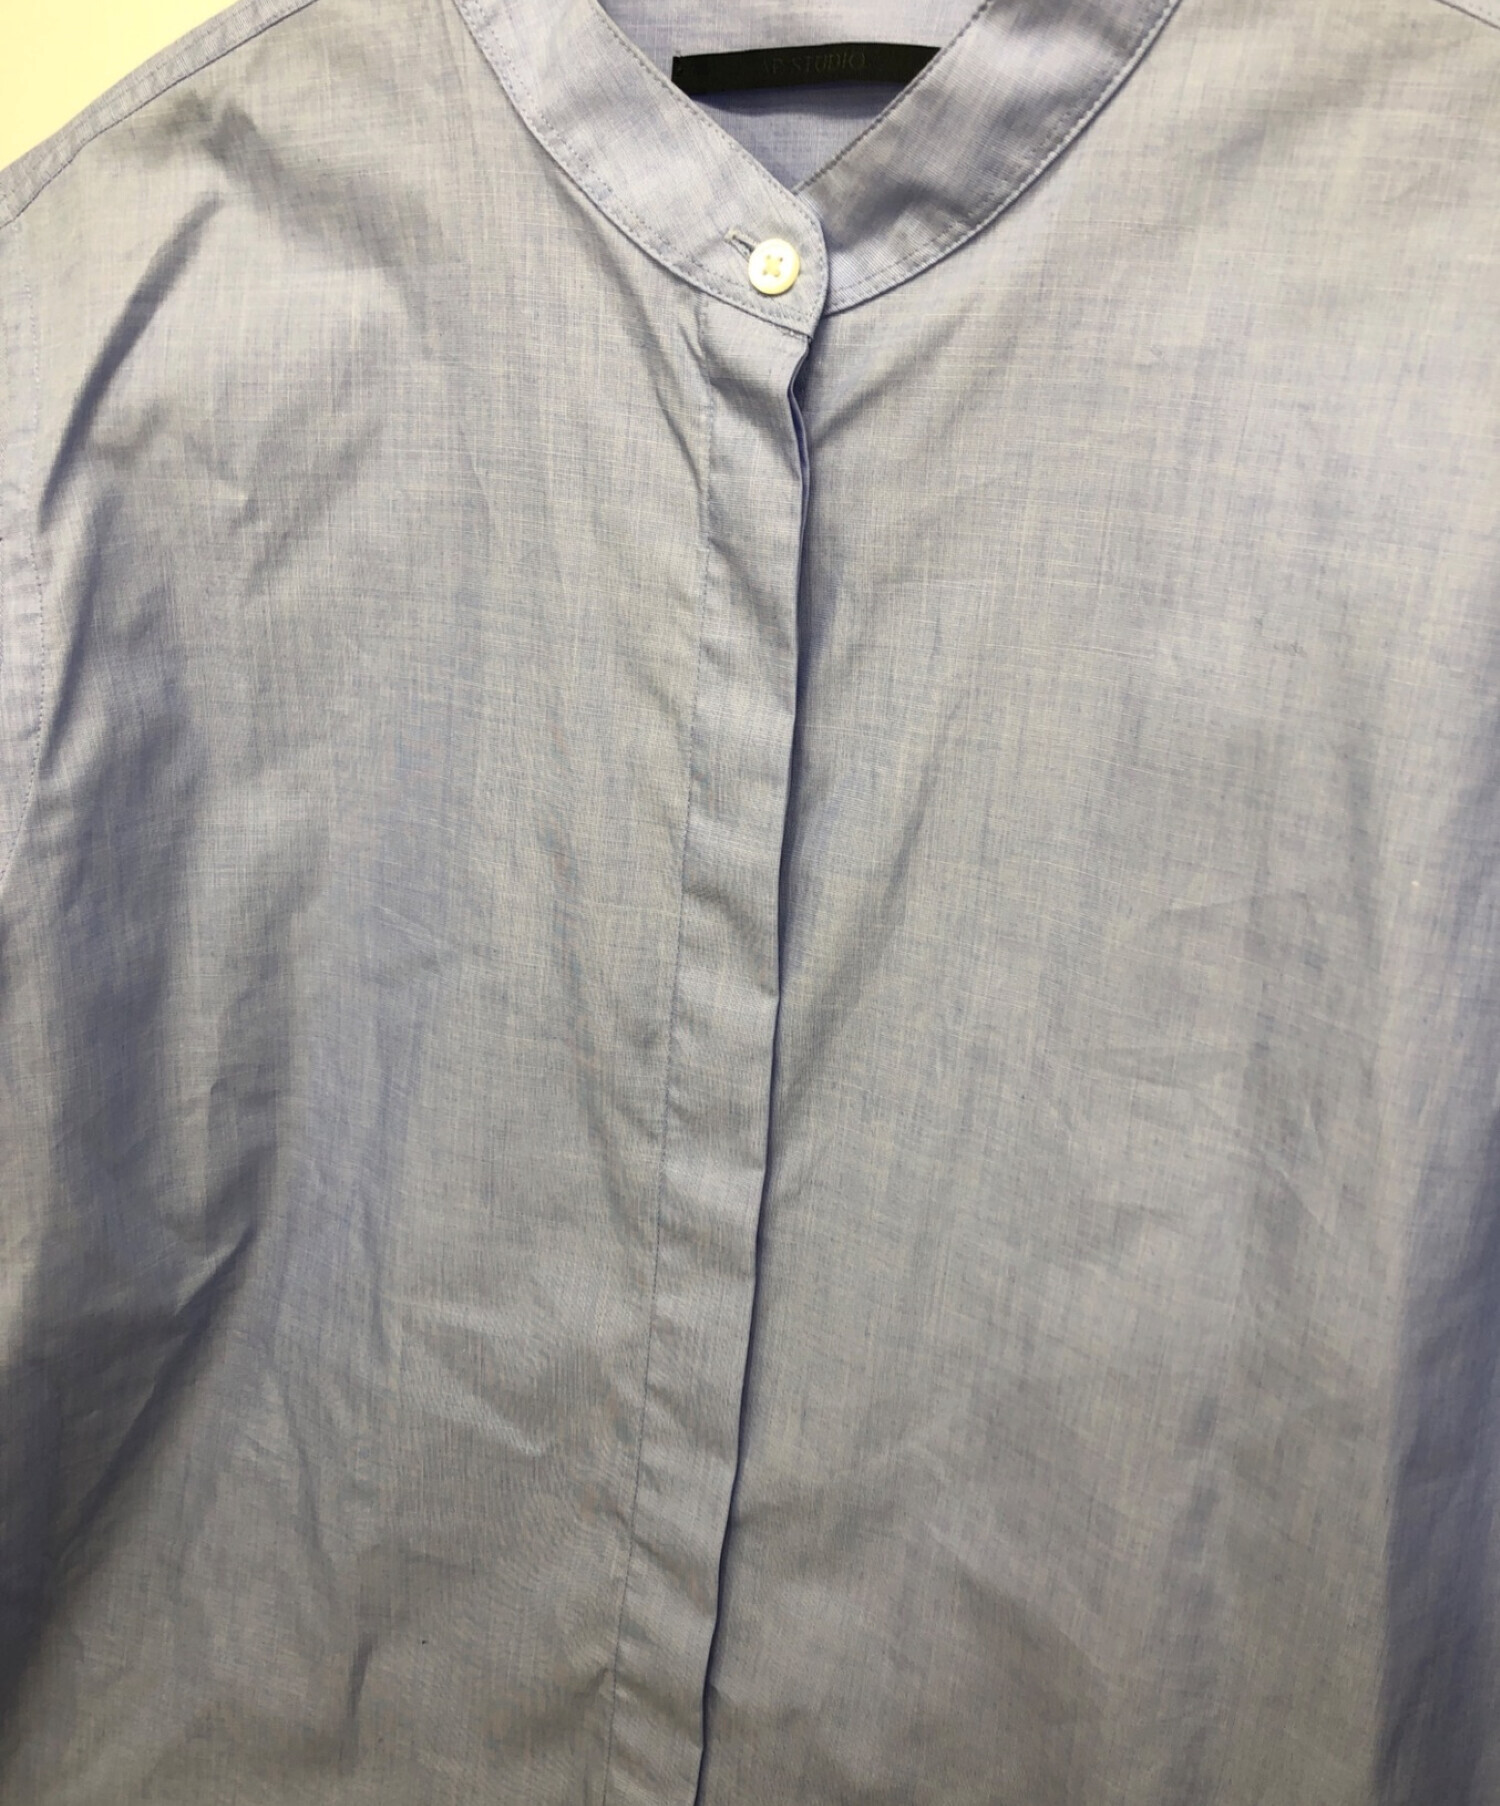 AP STUDIO (エーピーストゥディオ) ブラッシュスタンディングカラーシャツ ブルー サイズ:記載なし